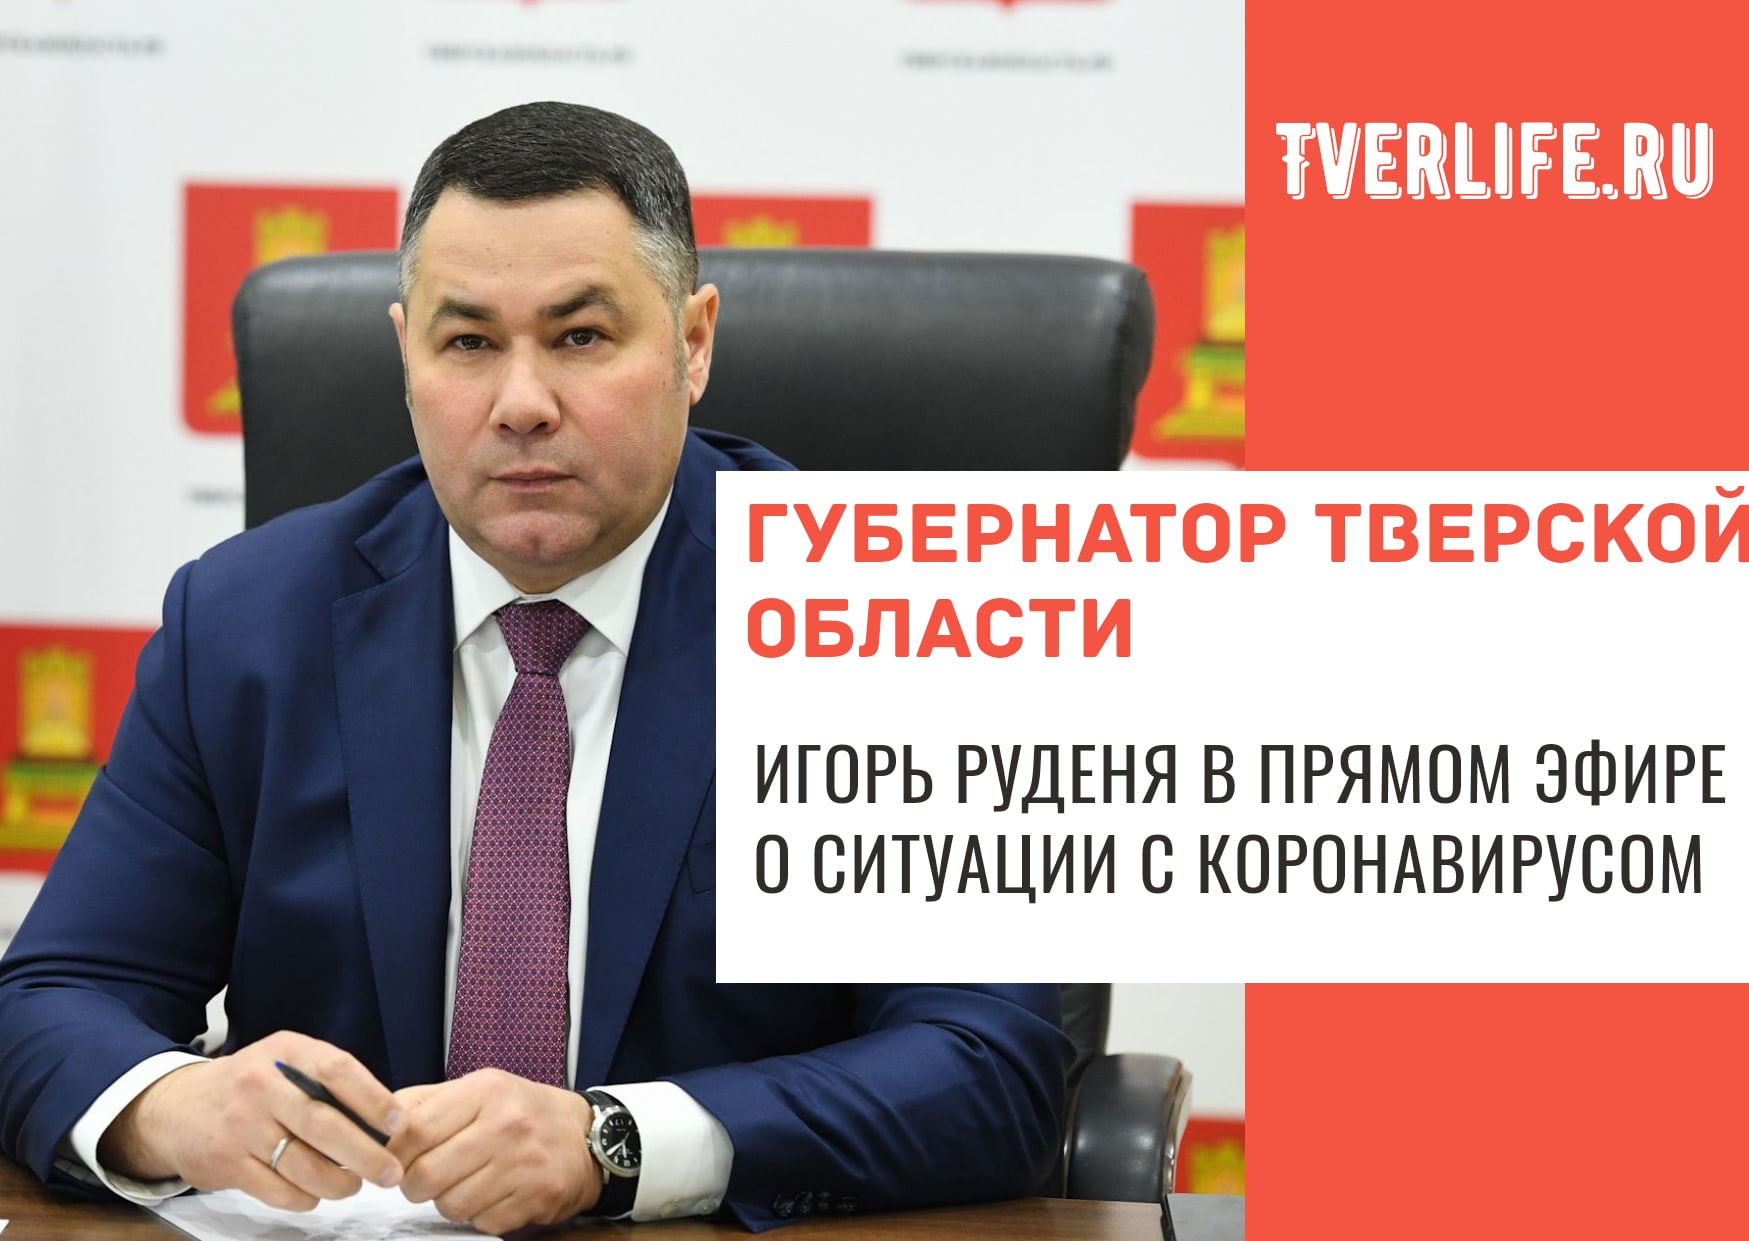 Губернатор в прямом эфире расскажет о снятии ограничений из-за коронавируса в Тверской области